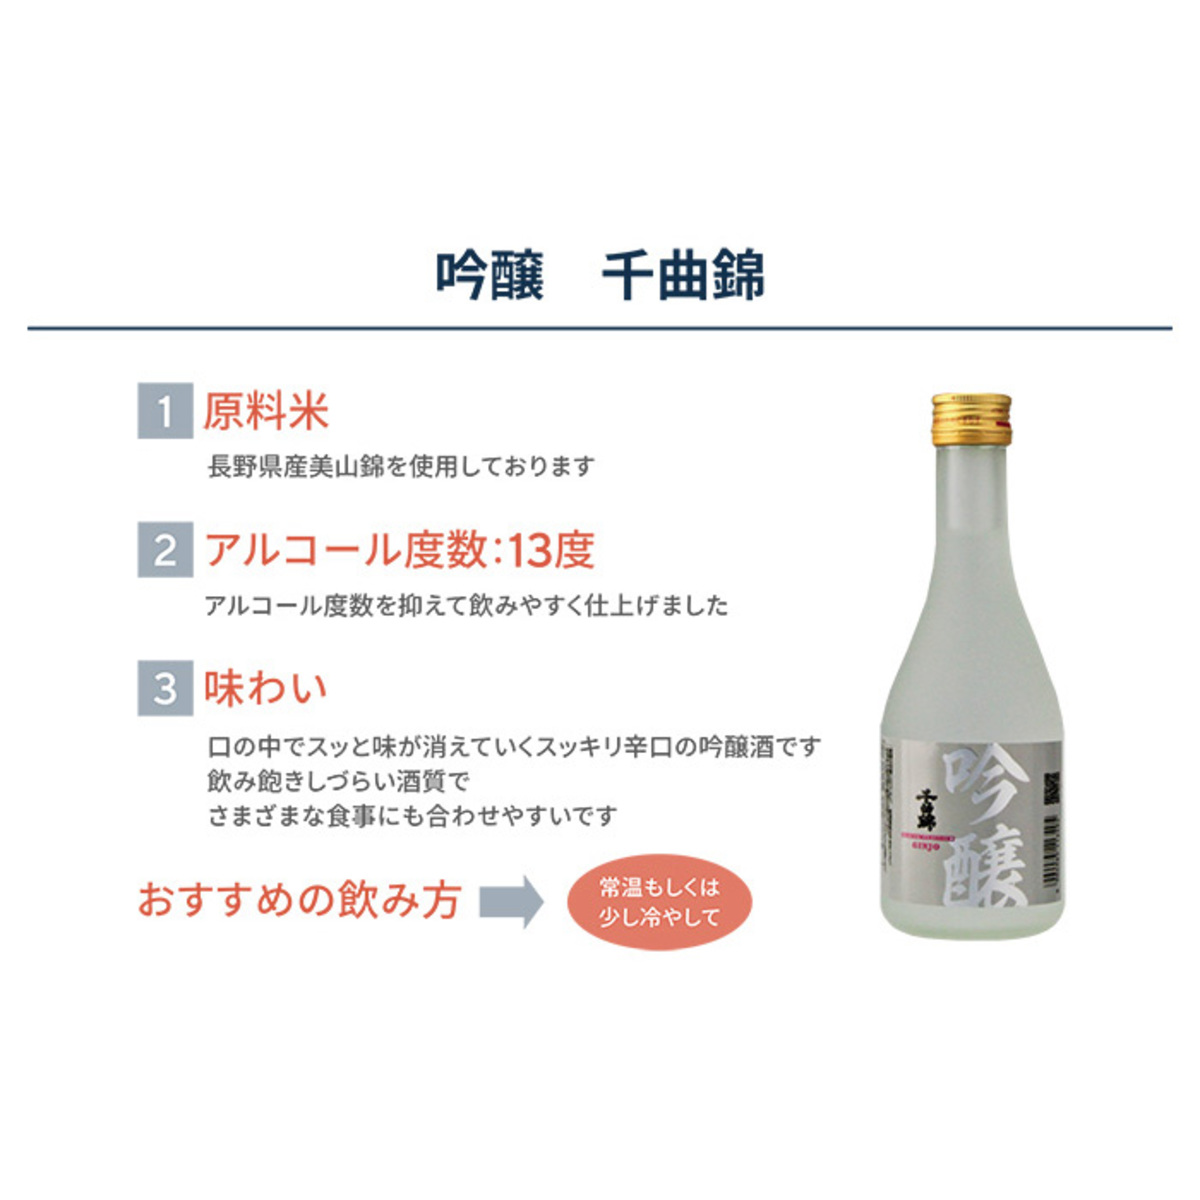 千曲錦 飲み比べ日本酒セット300ml×4本 - QVC.jp